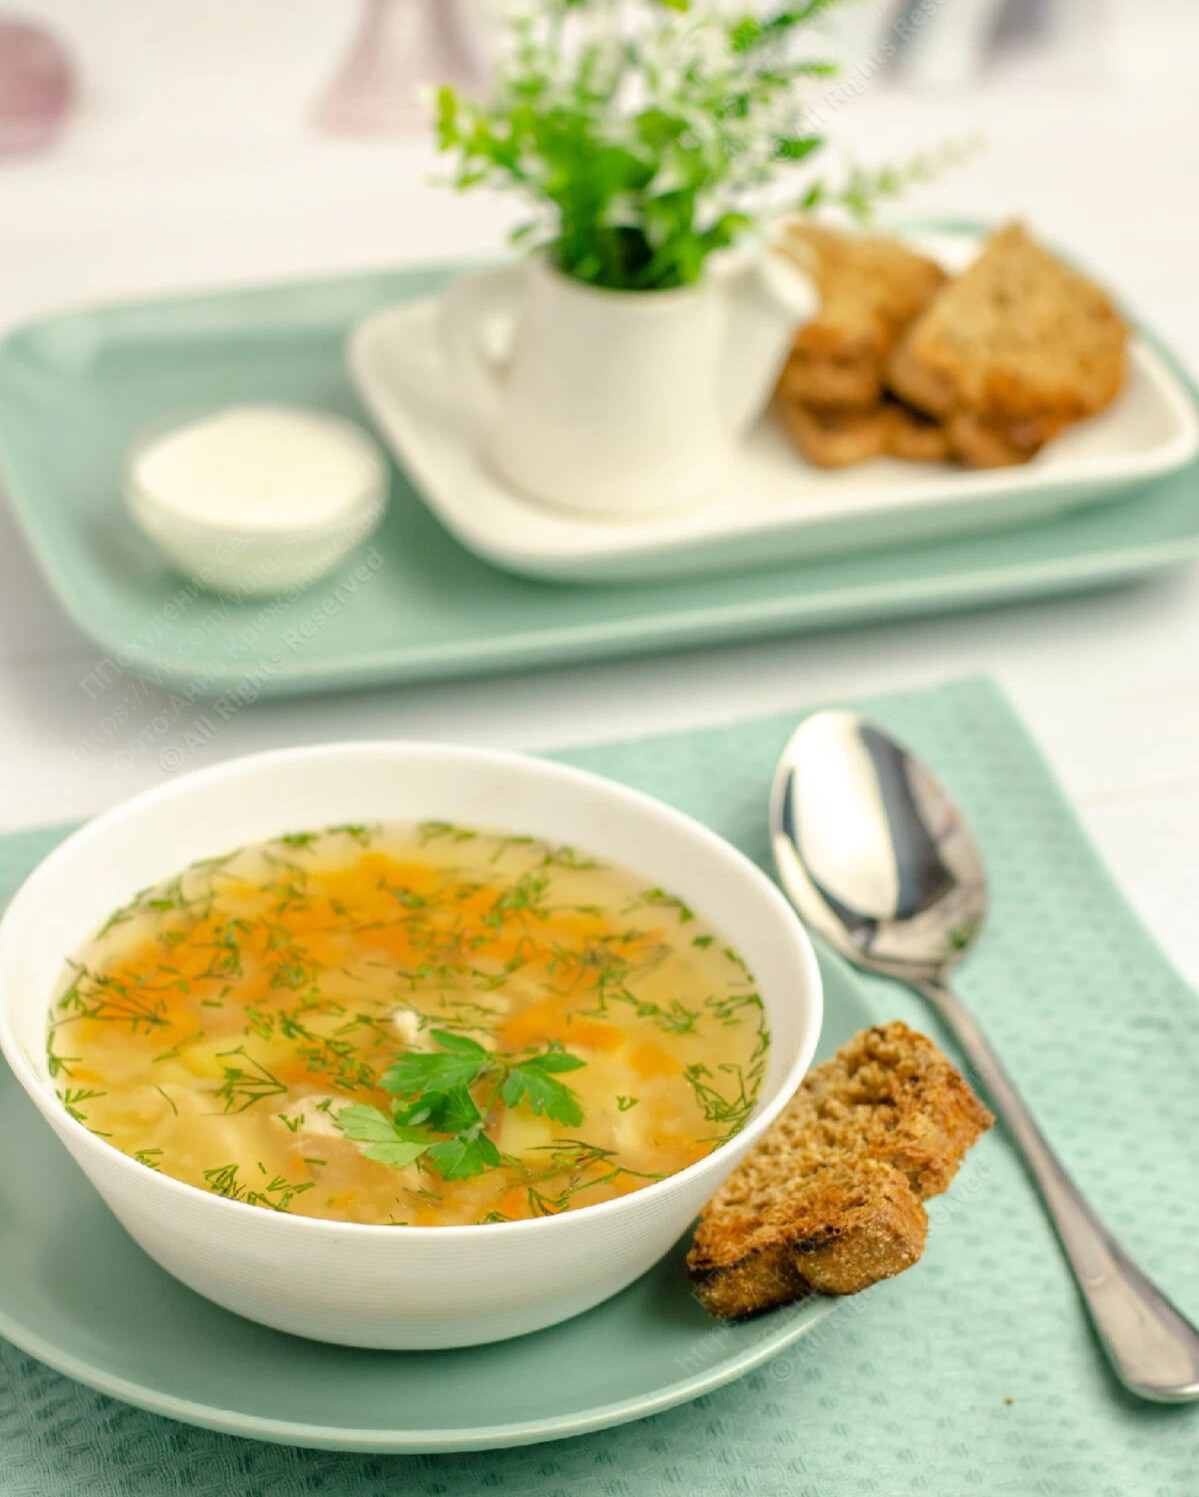 Суп гороховый. Горох для горохового супа. День супа. Обед за столом суп.